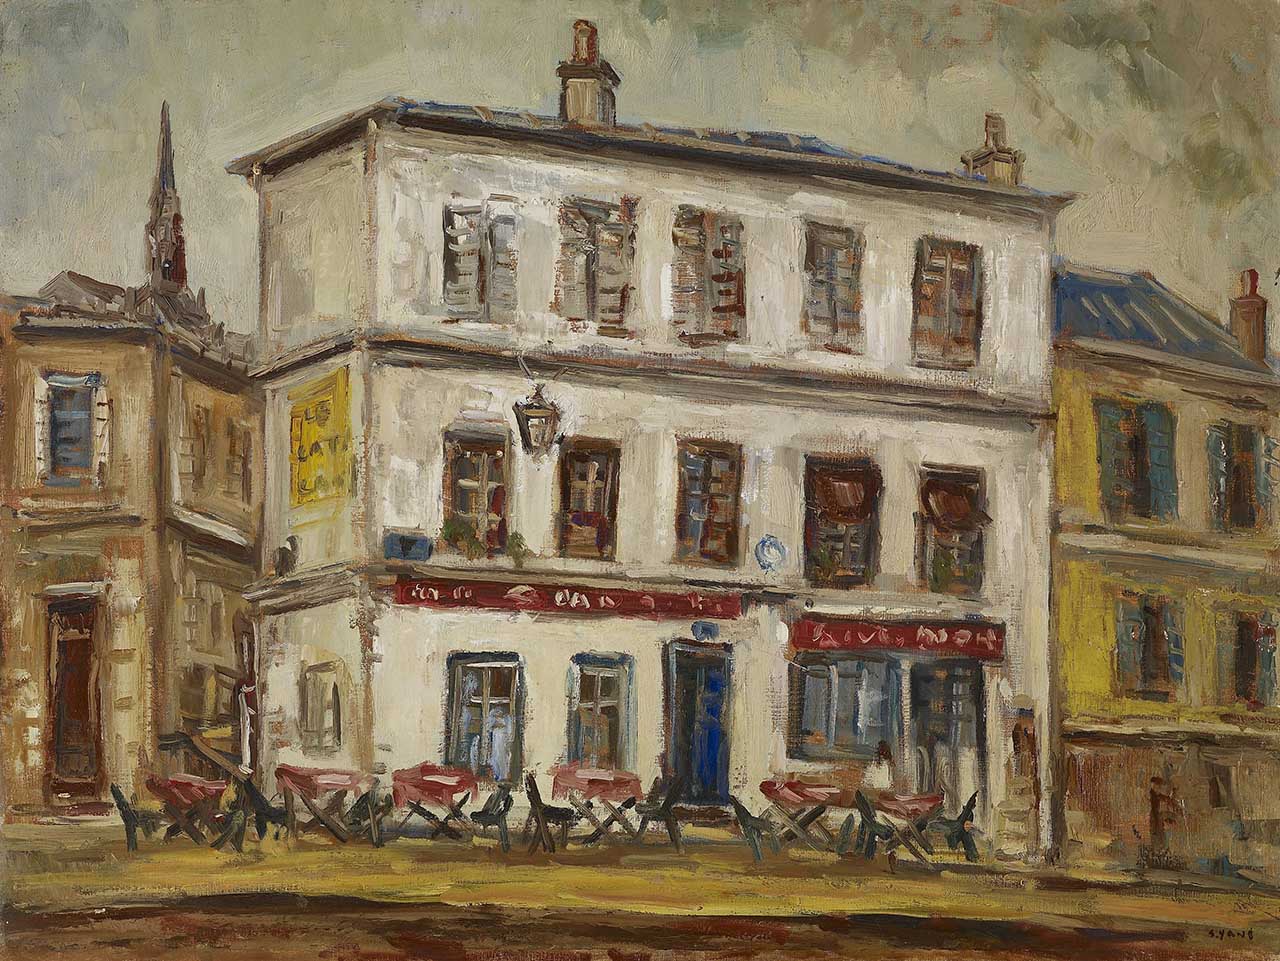 Café in France Oil on canvas 61x80 cm